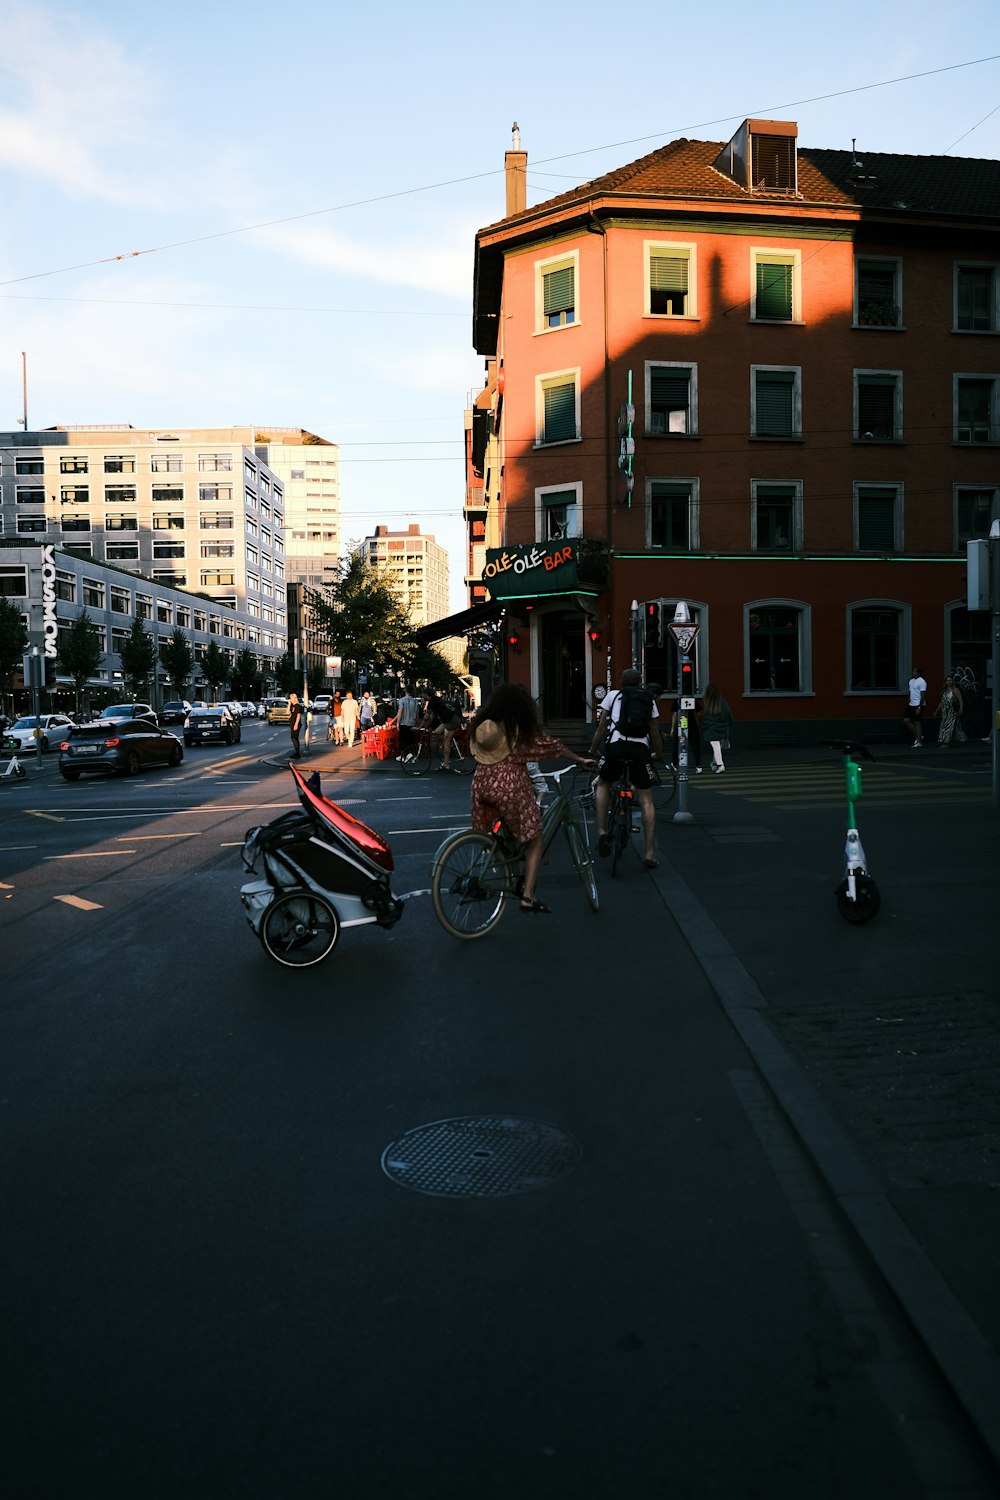 Eine Gruppe von Menschen, die auf einer Straße Fahrrad fahren